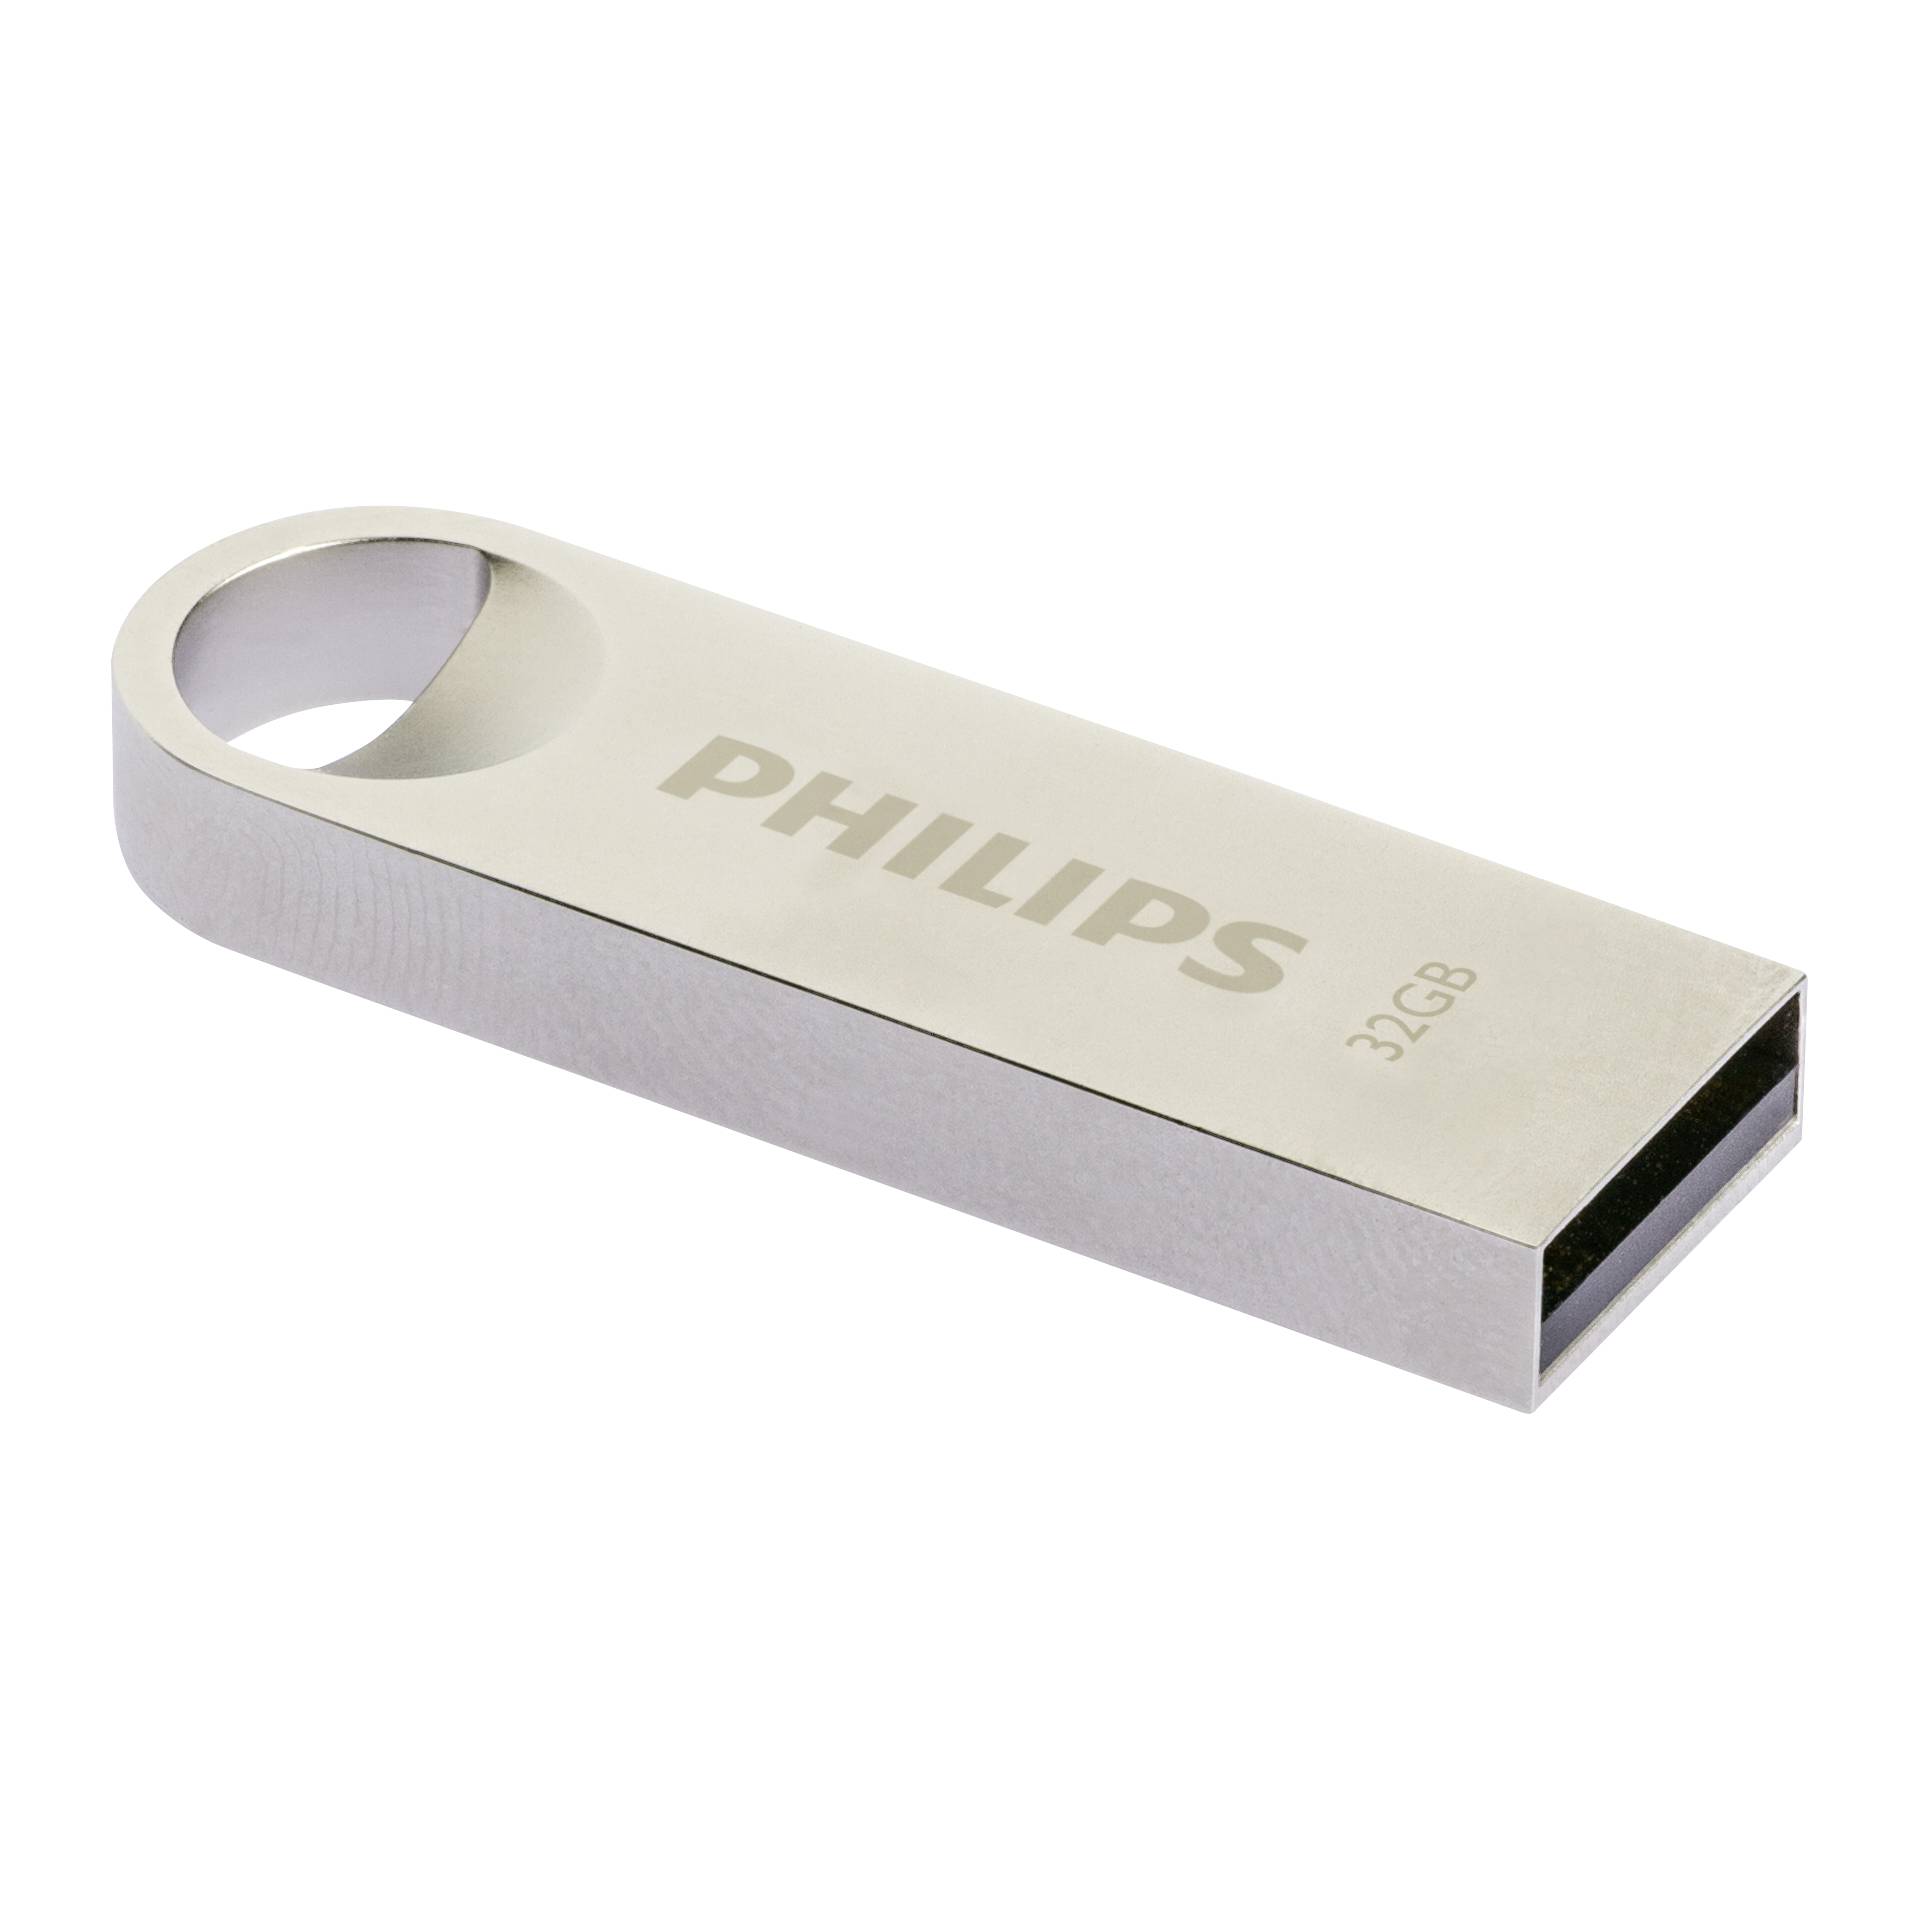 Philips USB 2.0             32GB Moon